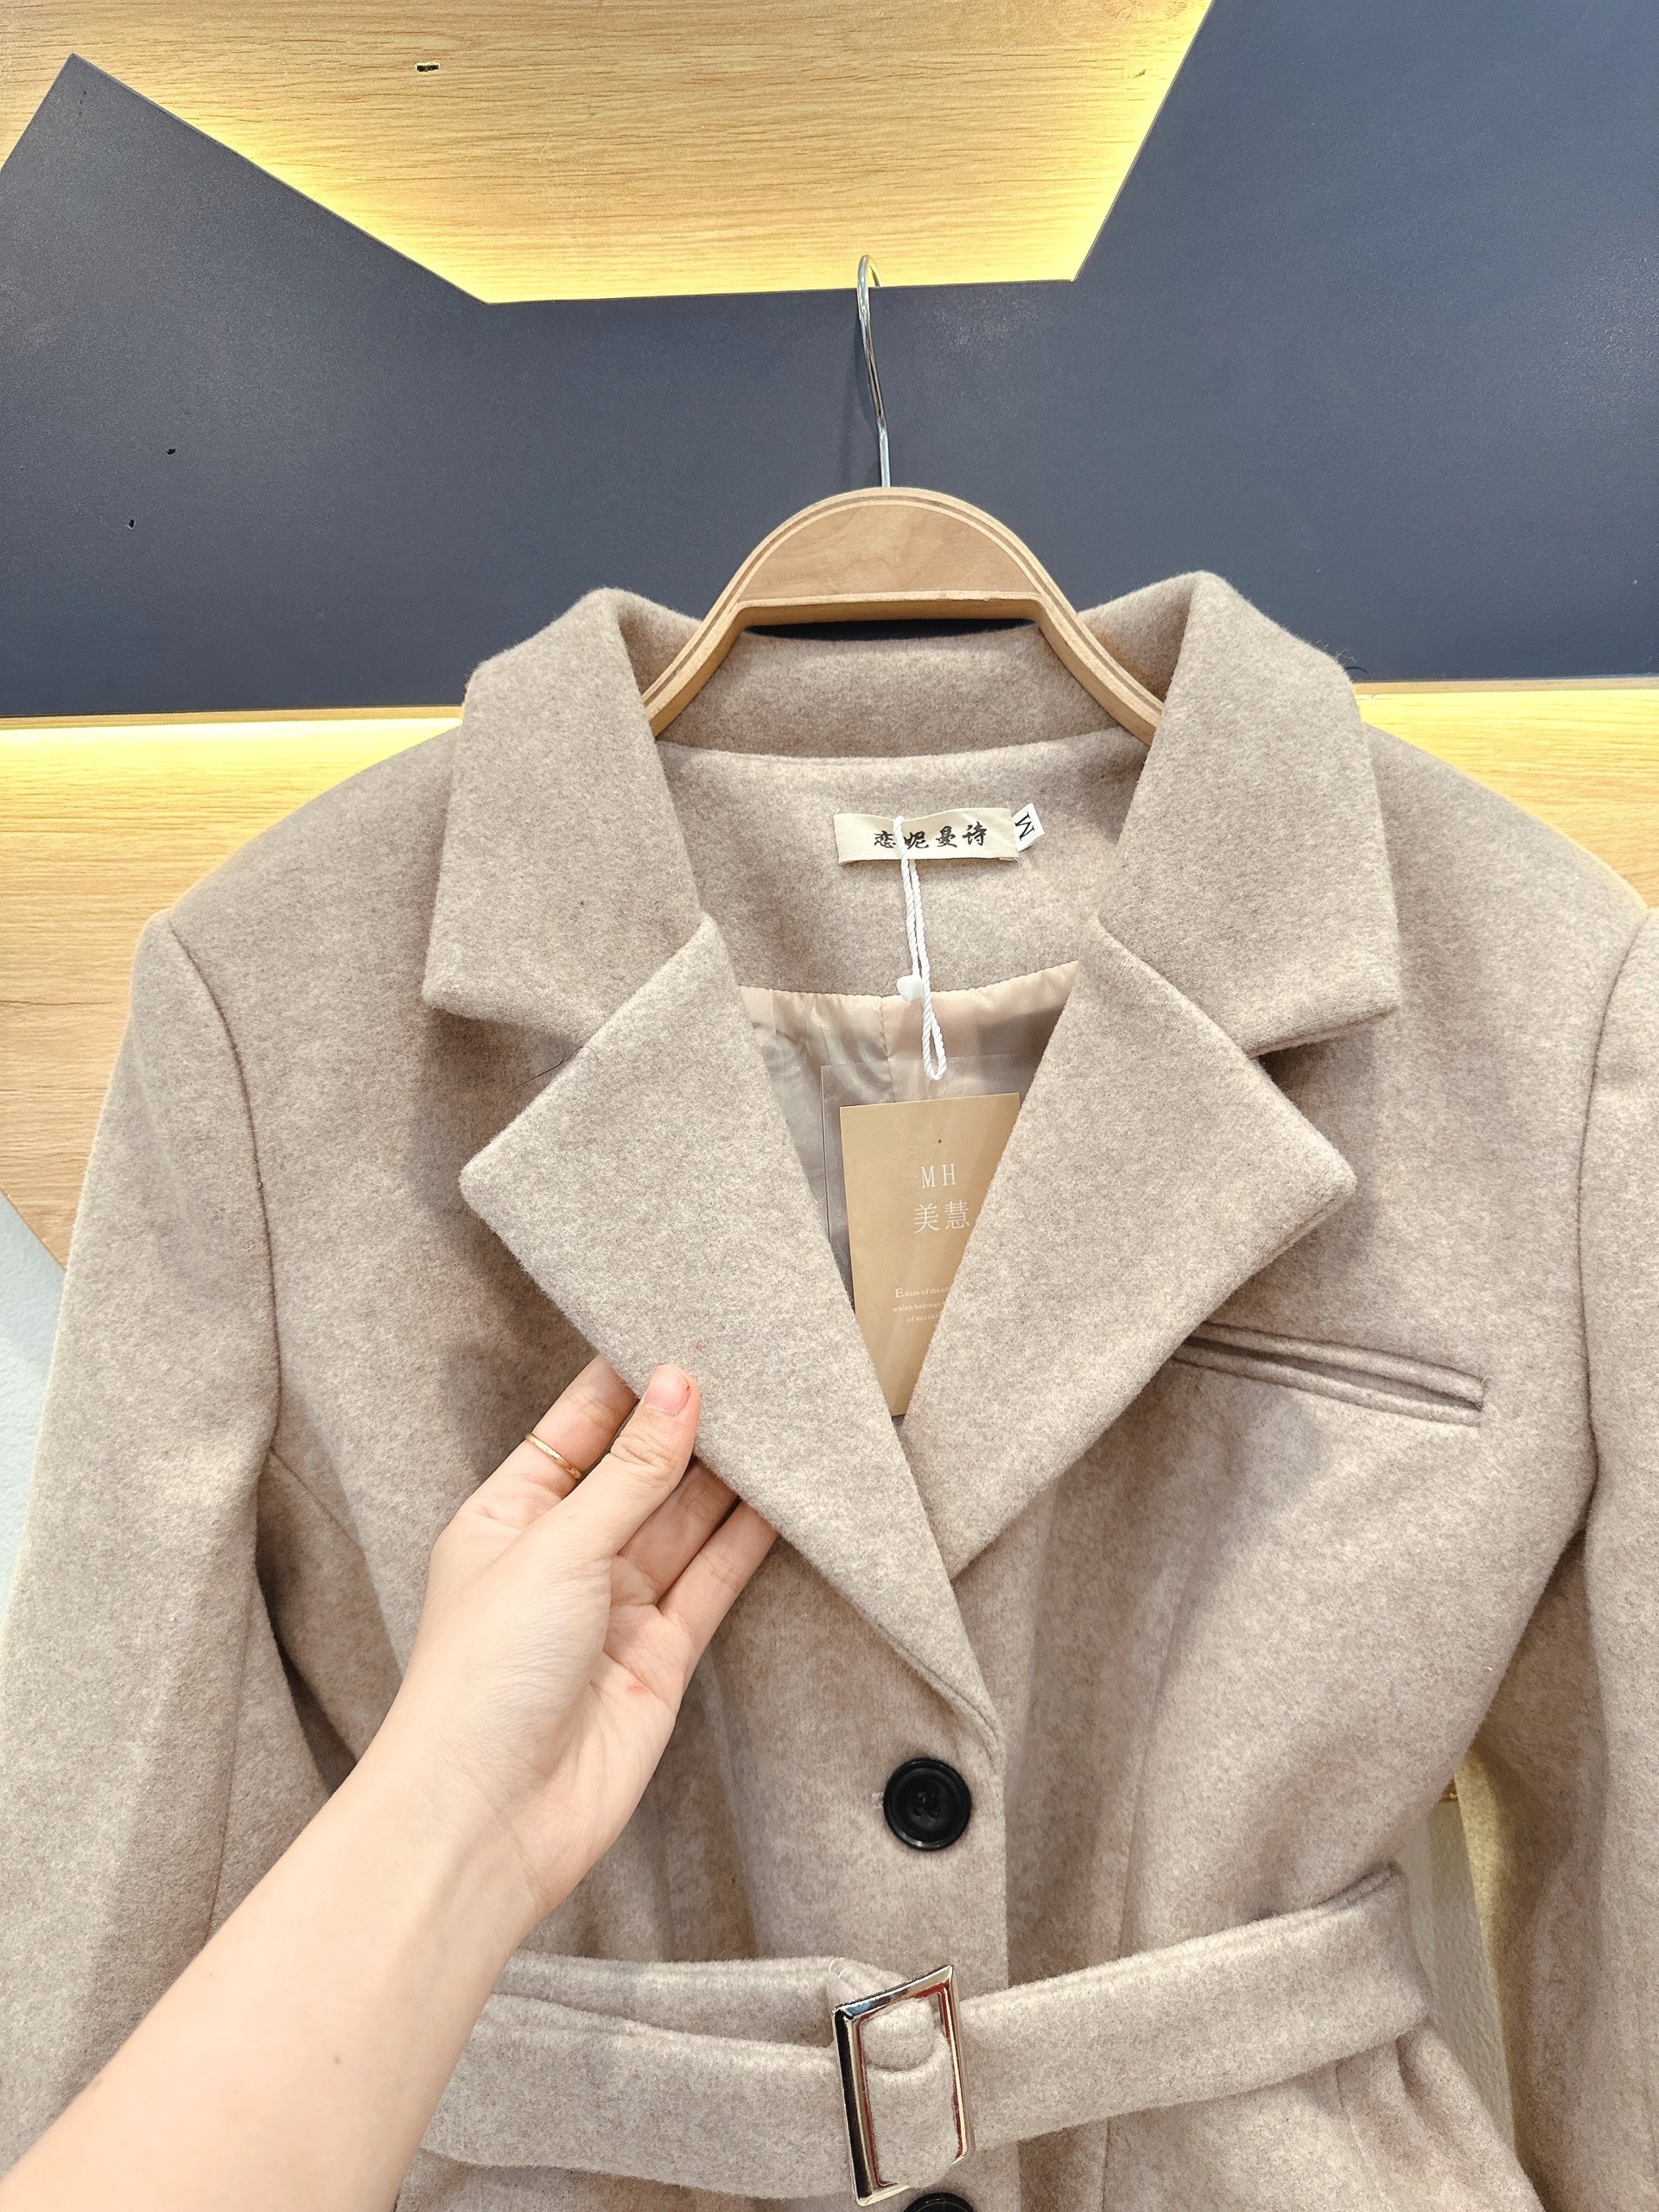 8 kiểu áo khoác dạ cổ vest chuẩn đẹp cho nữ giáo viên